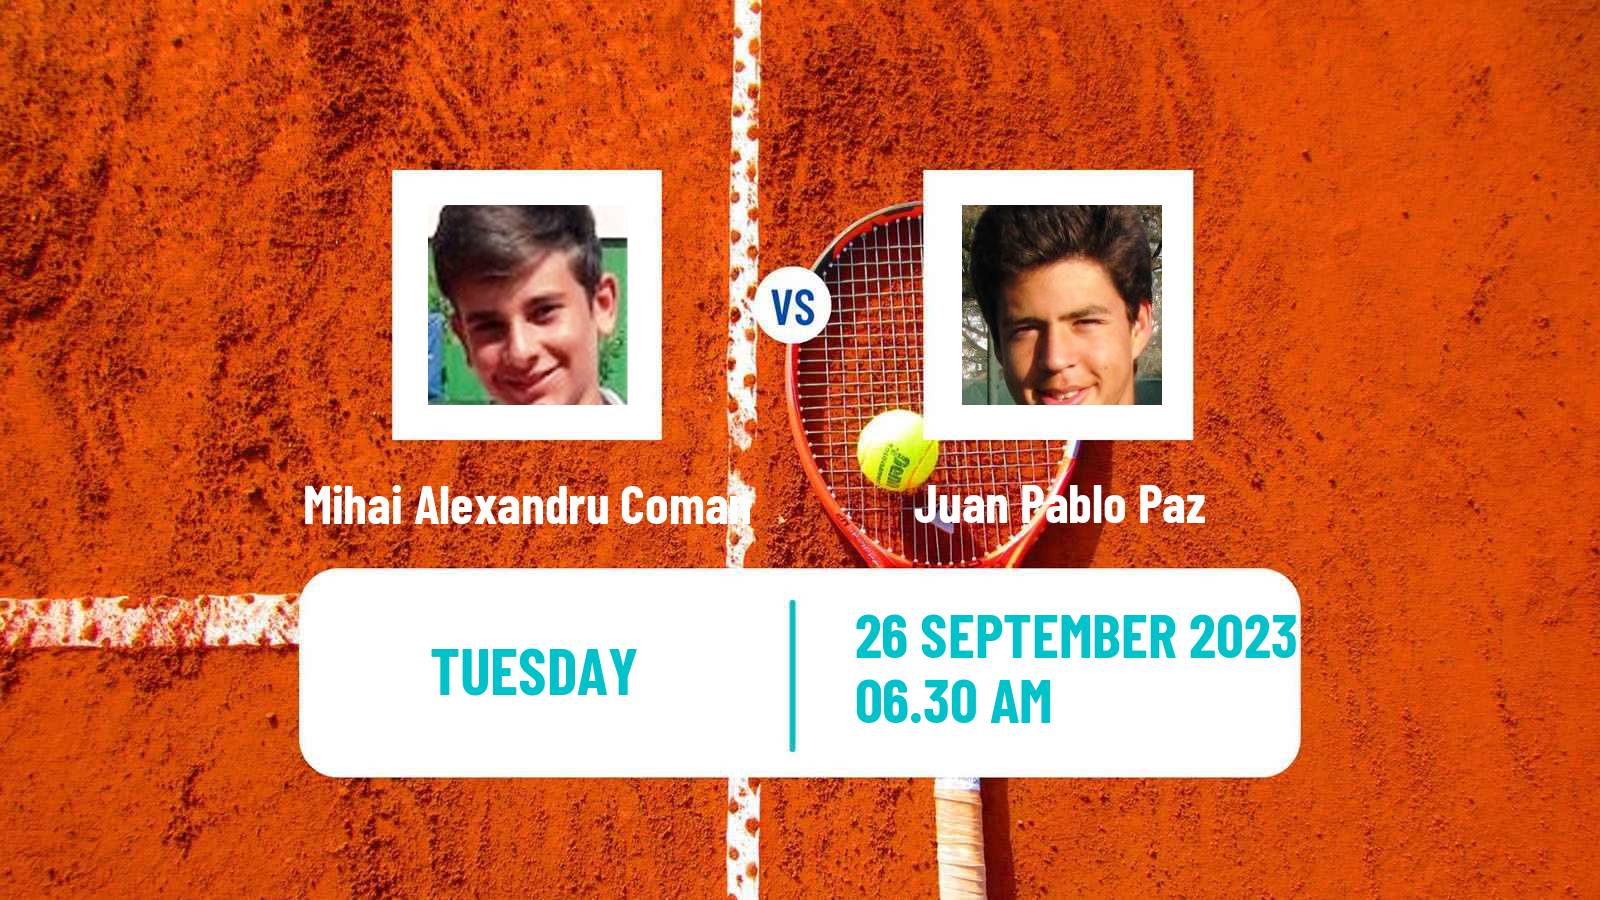 Tennis ITF M15 Arad Men Mihai Alexandru Coman - Juan Pablo Paz